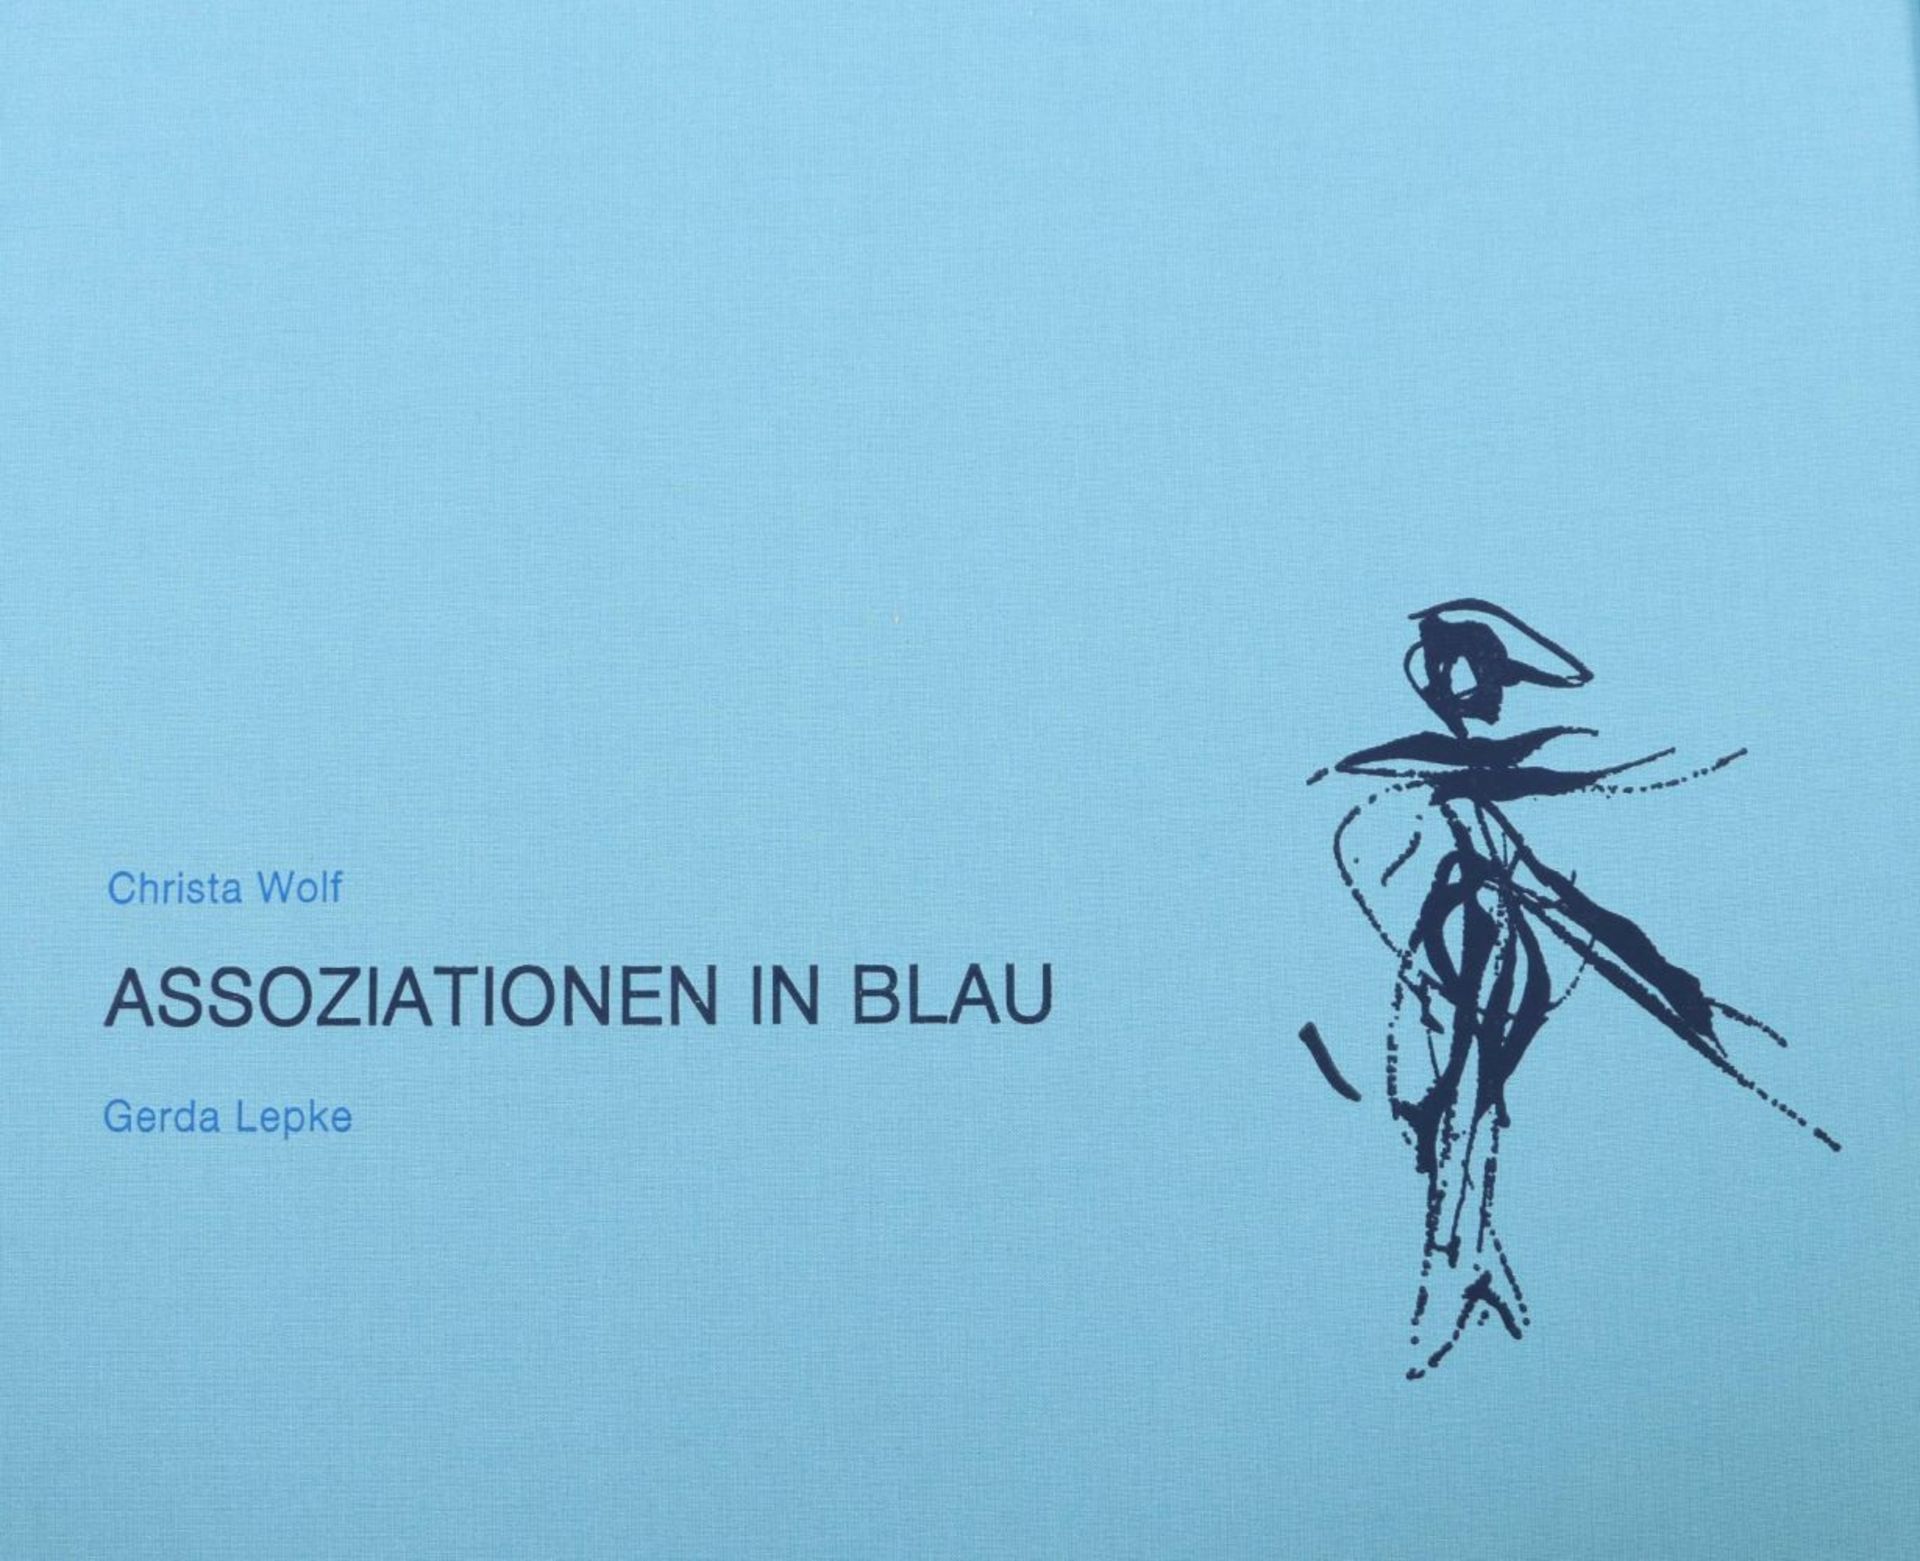 Wolf, Christa Assoziationen in Blau, - Image 4 of 7